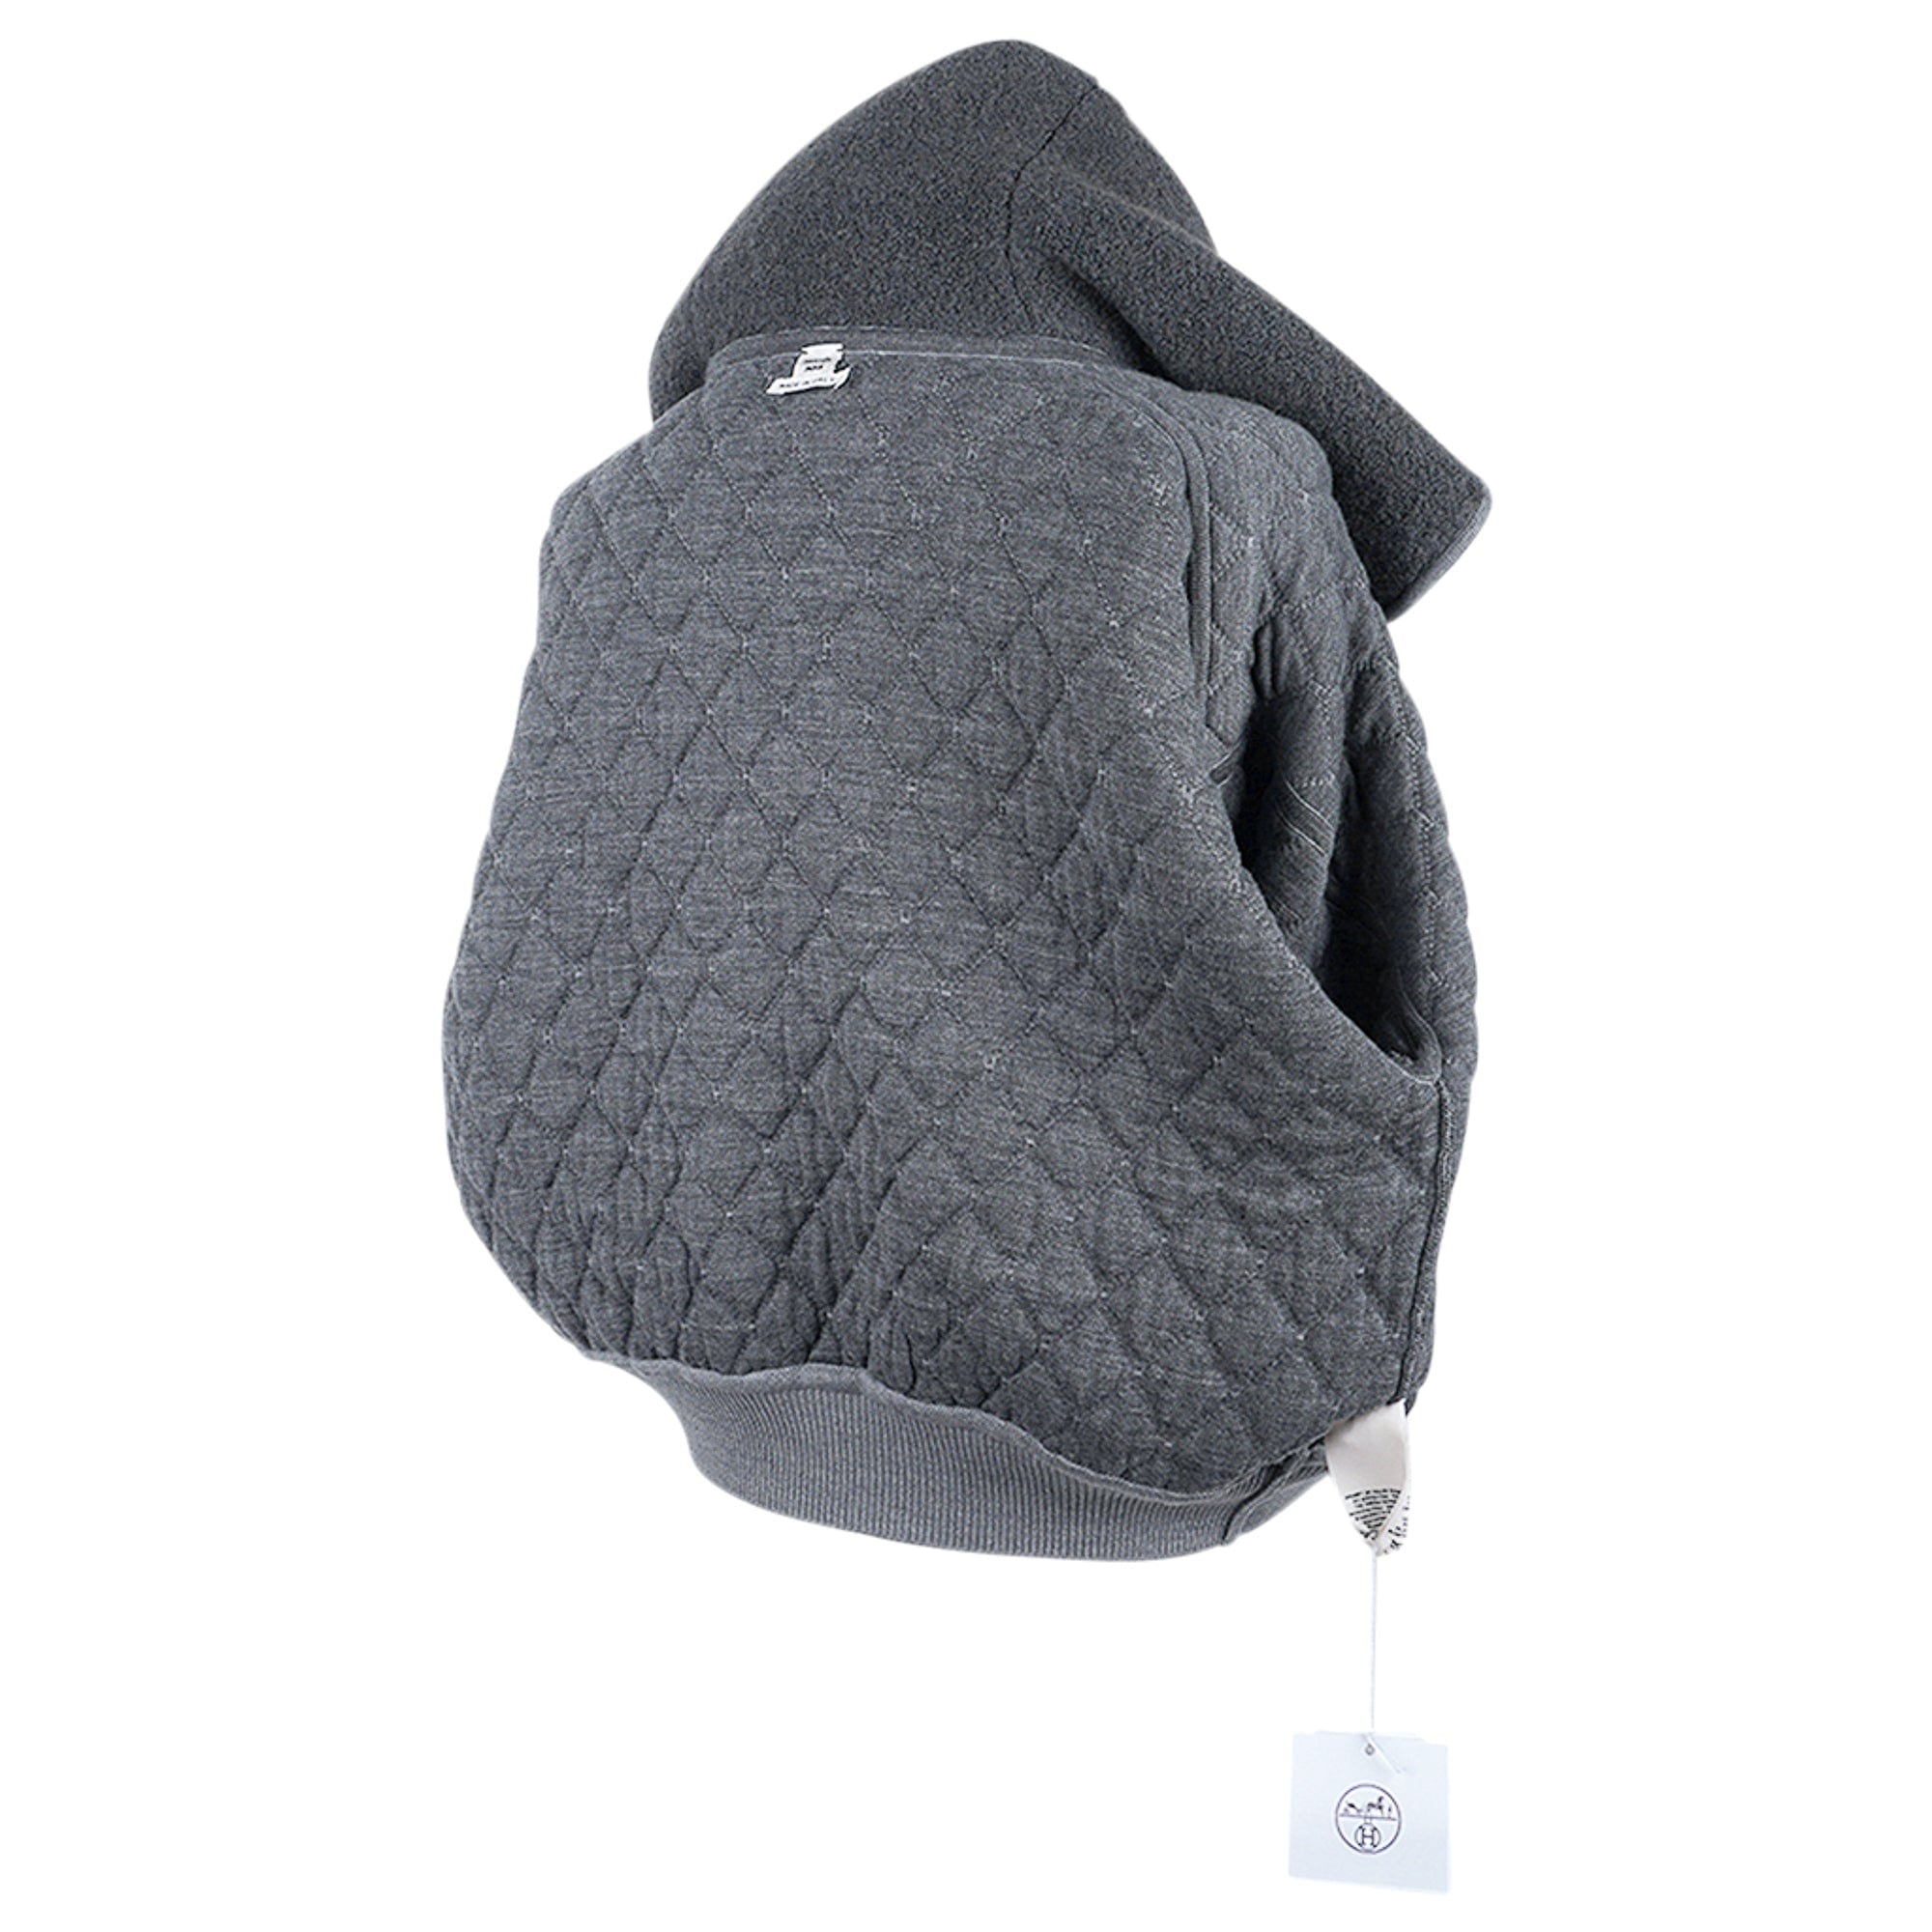 Hermes Zip Cardigan Quilted Hoodie Jacket Grey 40 / 6 – Mightychic